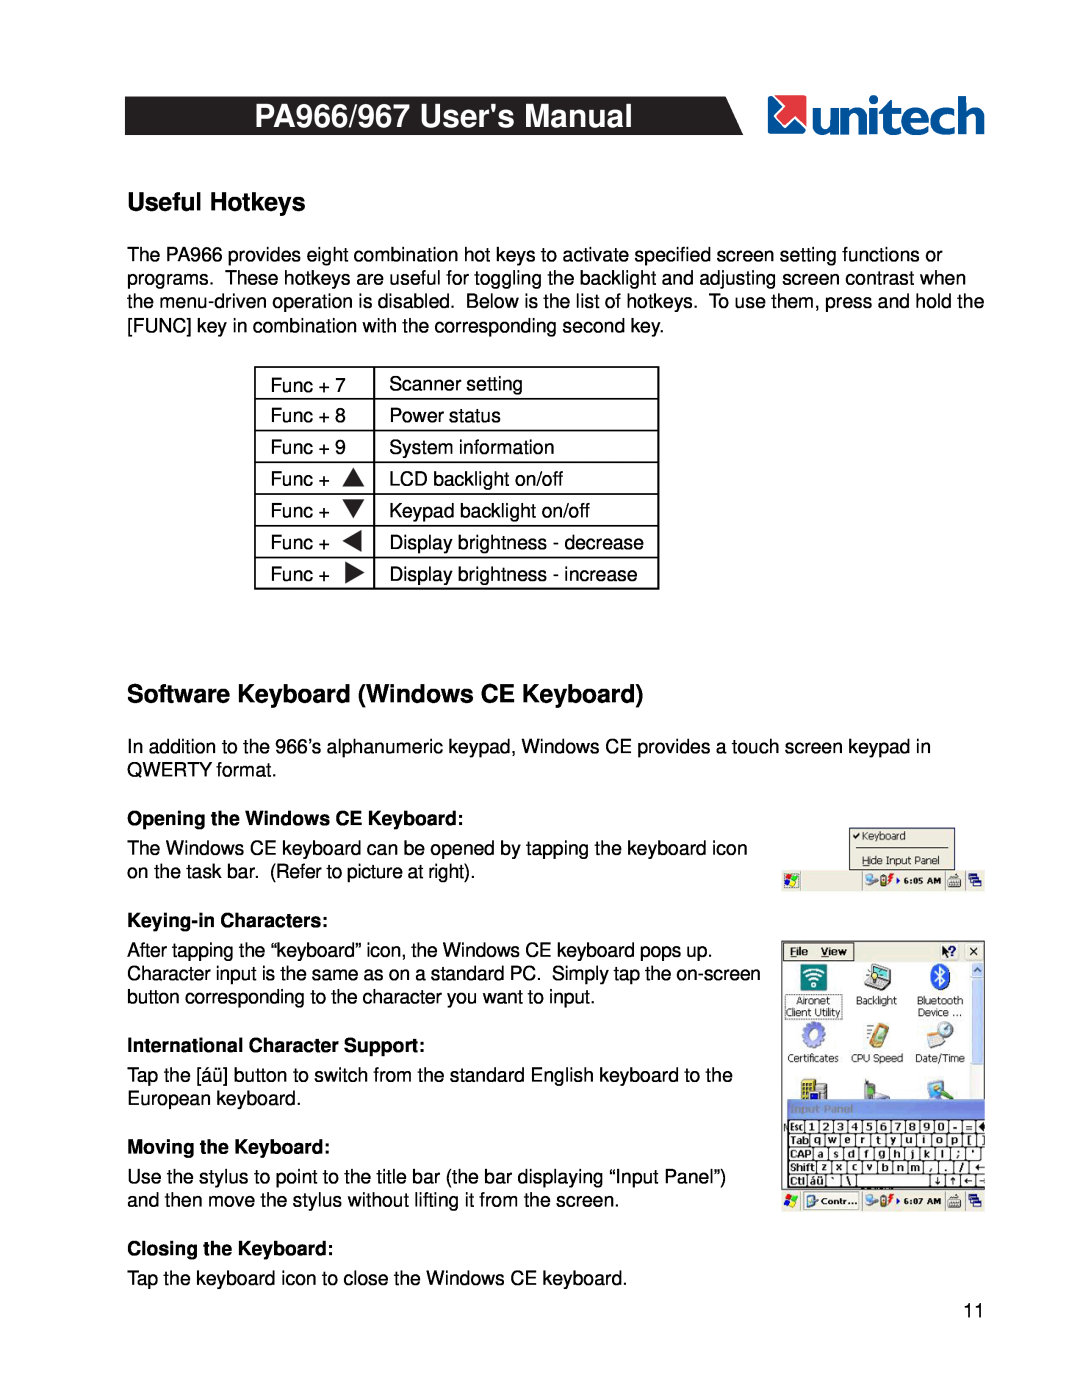 Unitech PA966 Useful Hotkeys, Software Keyboard Windows CE Keyboard, Opening the Windows CE Keyboard, Keying-inCharacters 